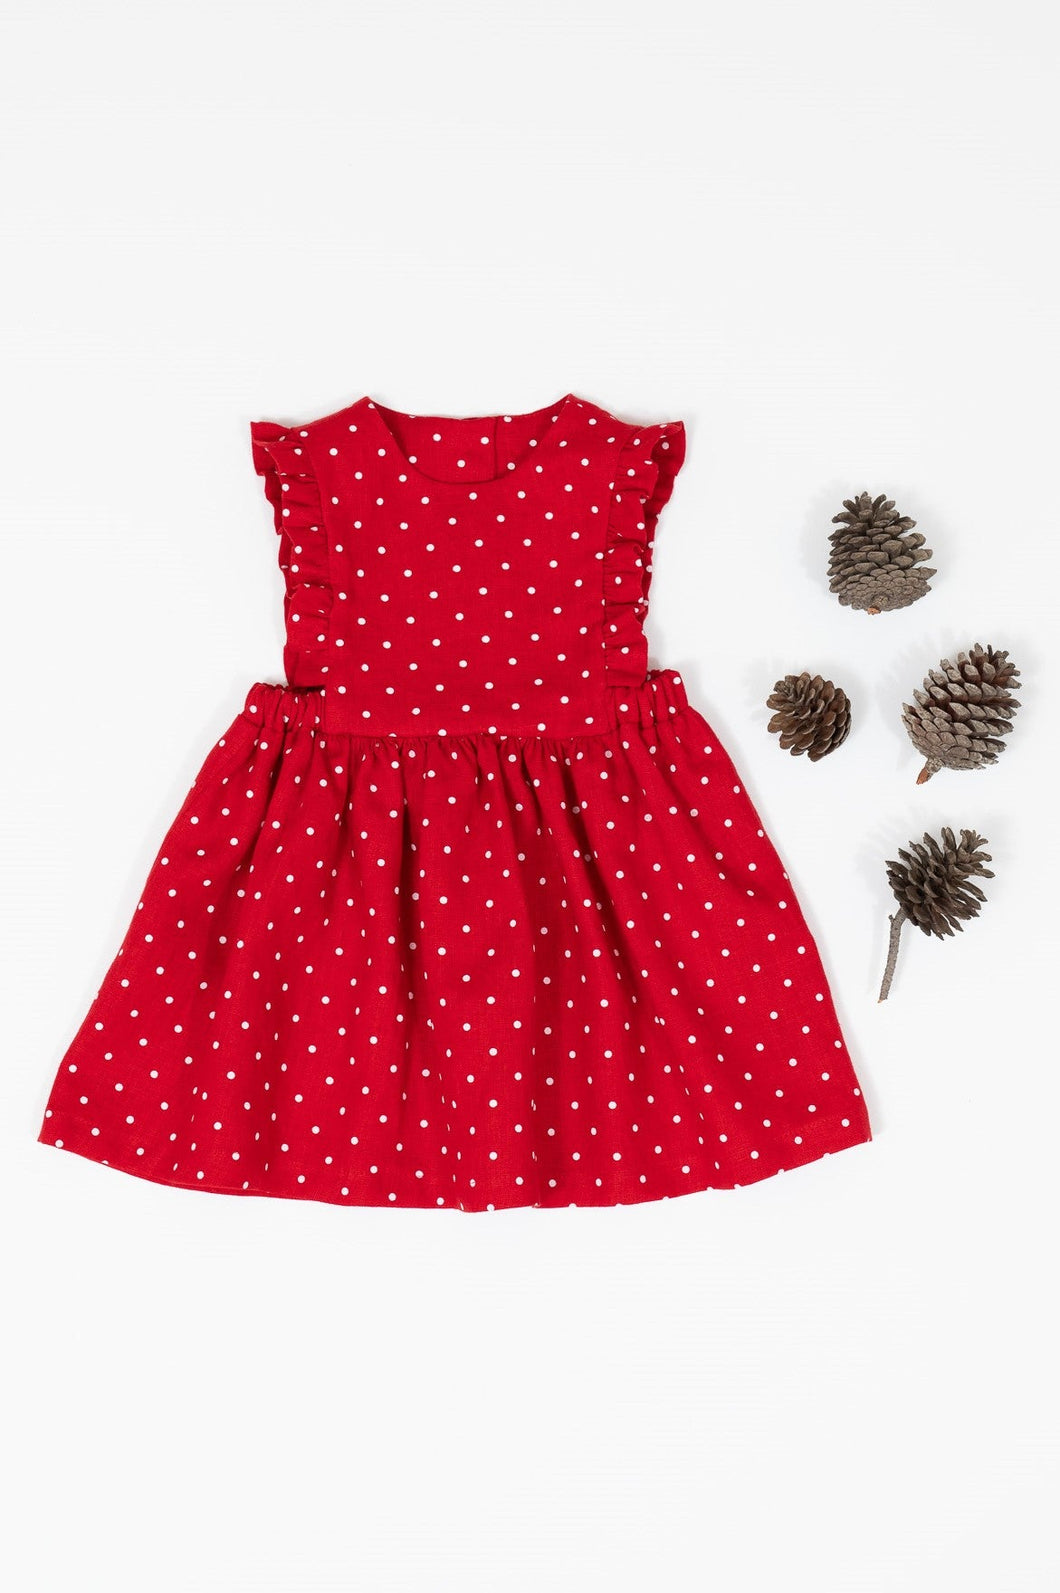 Zoe Dress- Red Polka Dot (Επιλογή υφασμάτων)